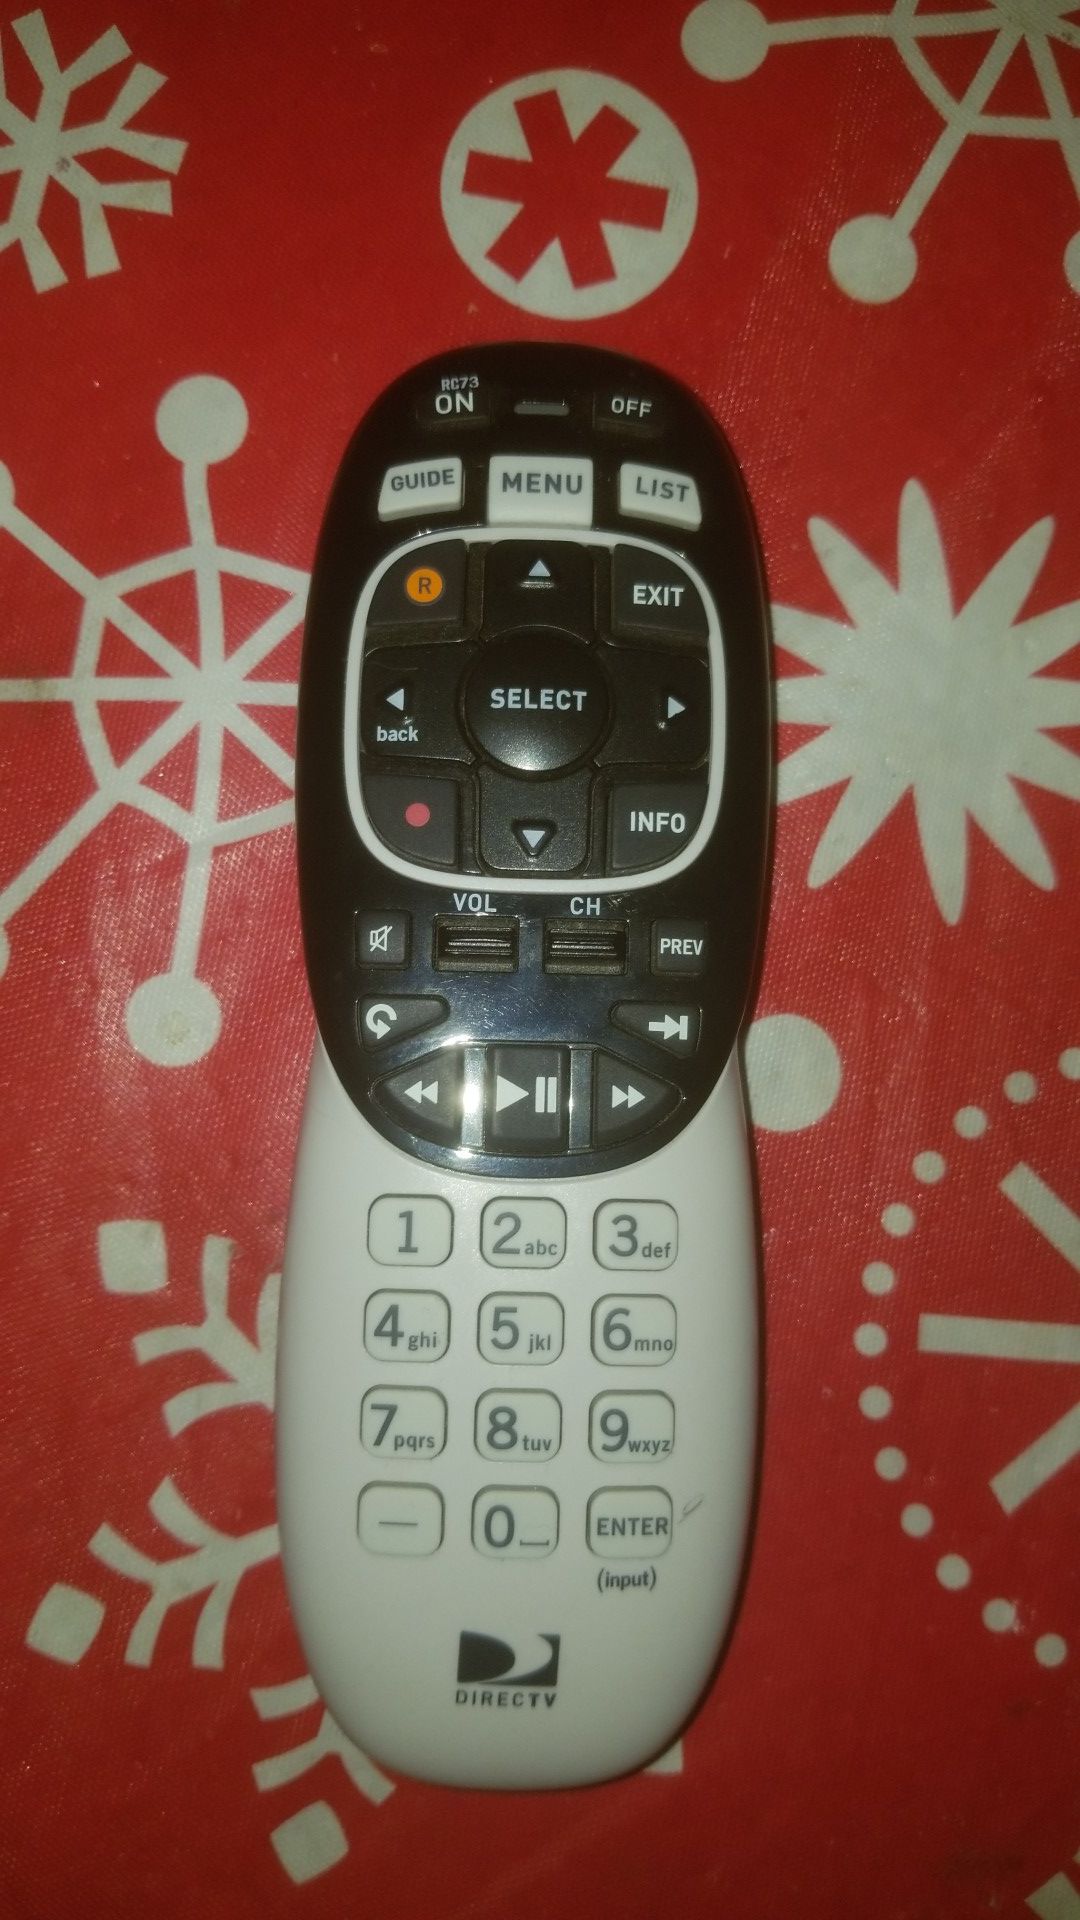 Direct TV Remote Control